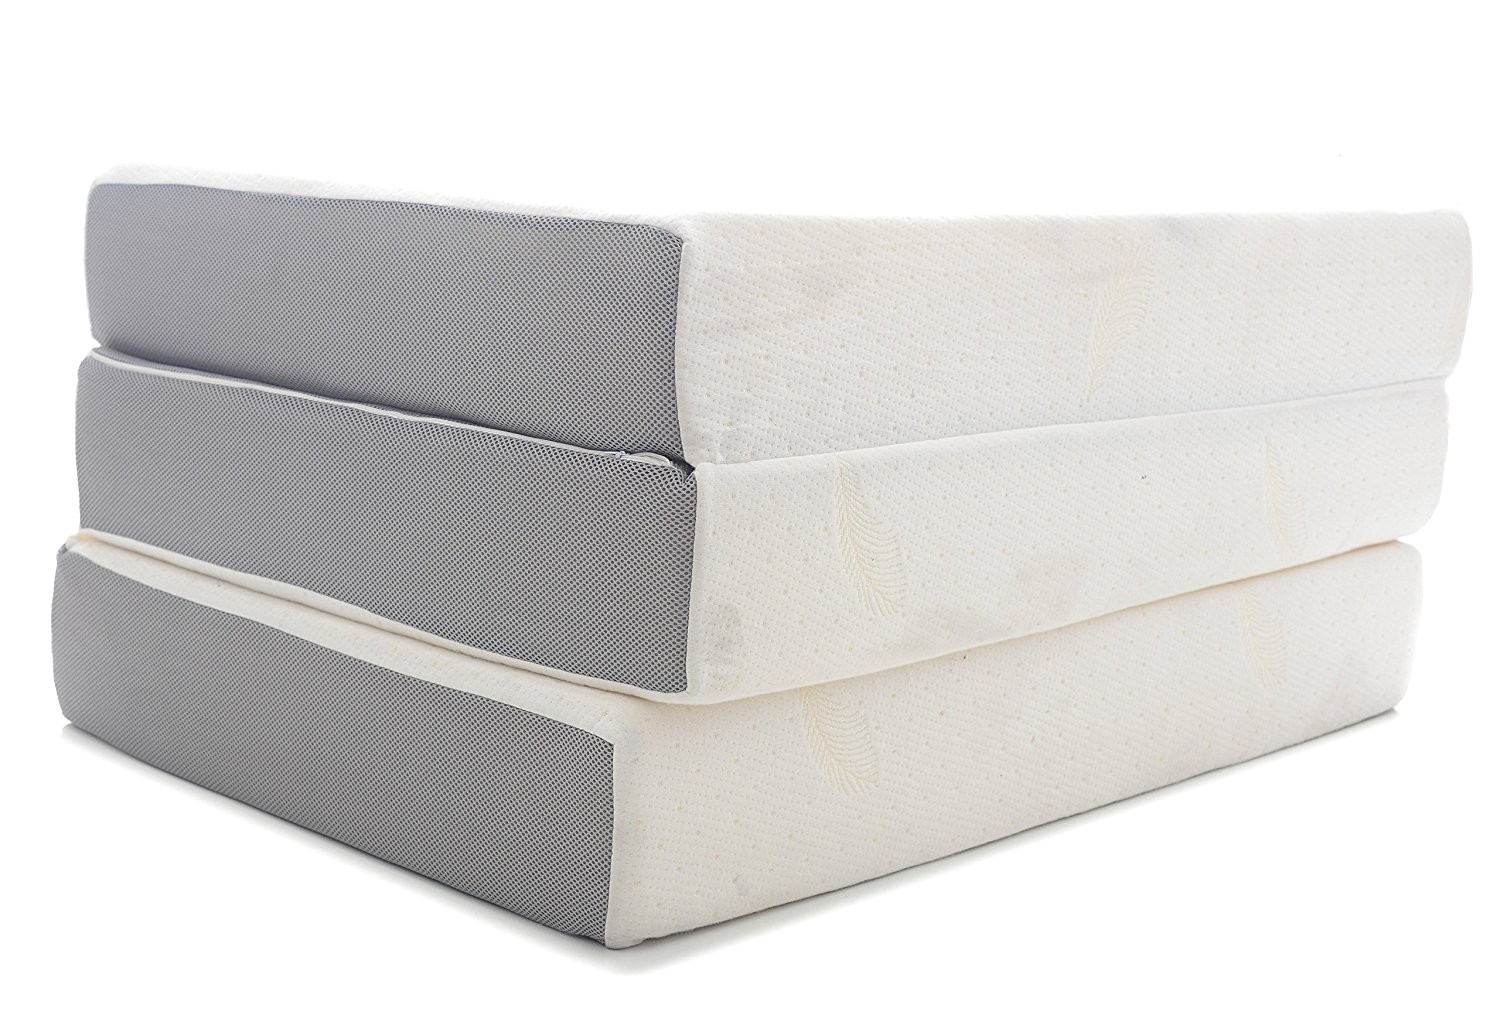 milliard 6 inch memory foam tri fold mattress